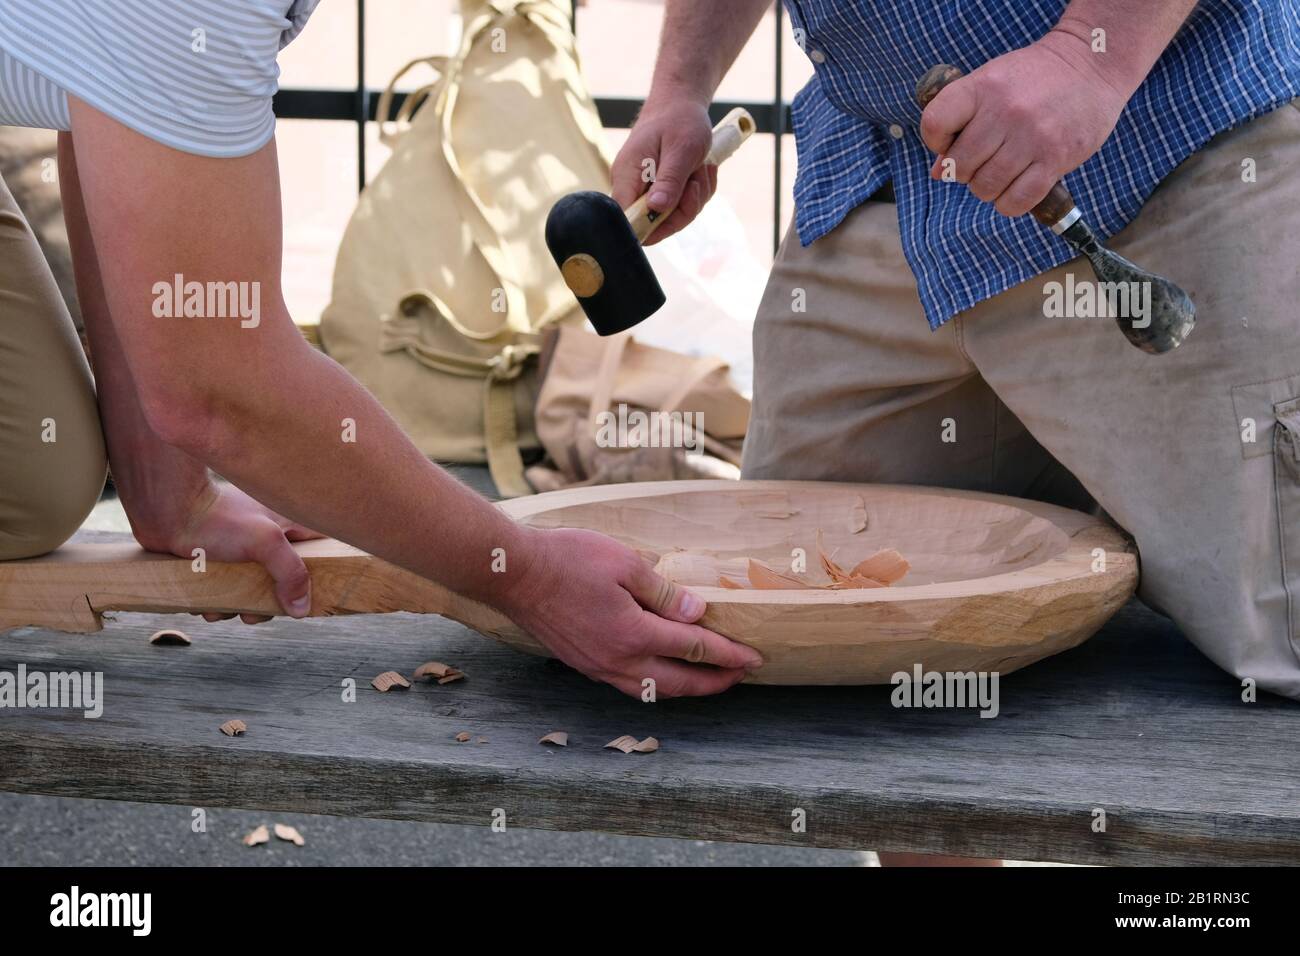 Tallado de madera. Dos maestros tallar productos de artesanía de madera utilizando la herramienta de carpintería, las manos de cerca. Concepto de carpintería y artesanía Foto de stock